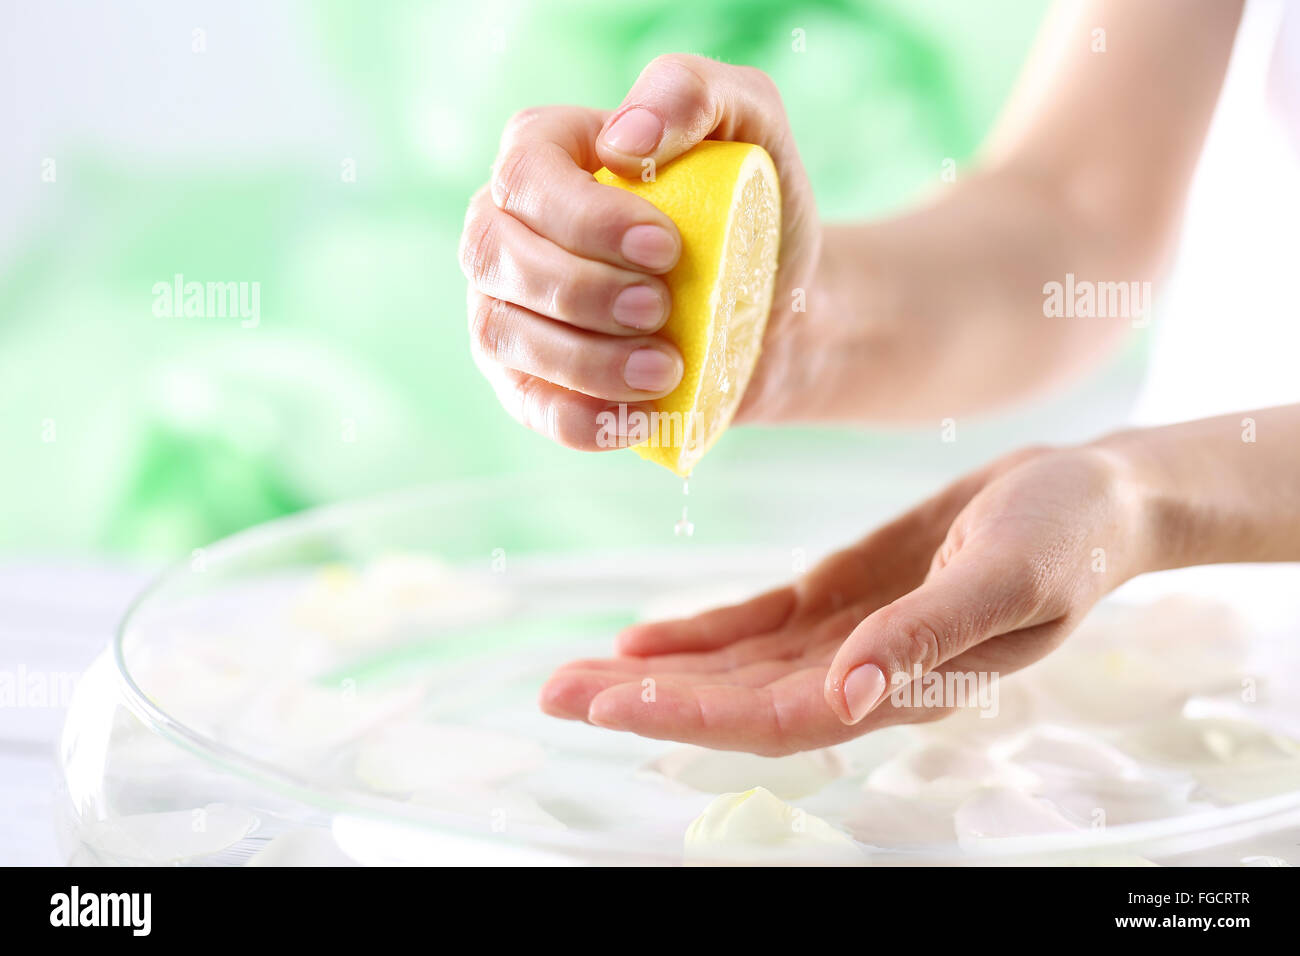 El jugo de limón, la cosmética natural. Baño de Limón para ayudar a aligerar decoloraciones de la piel Foto de stock